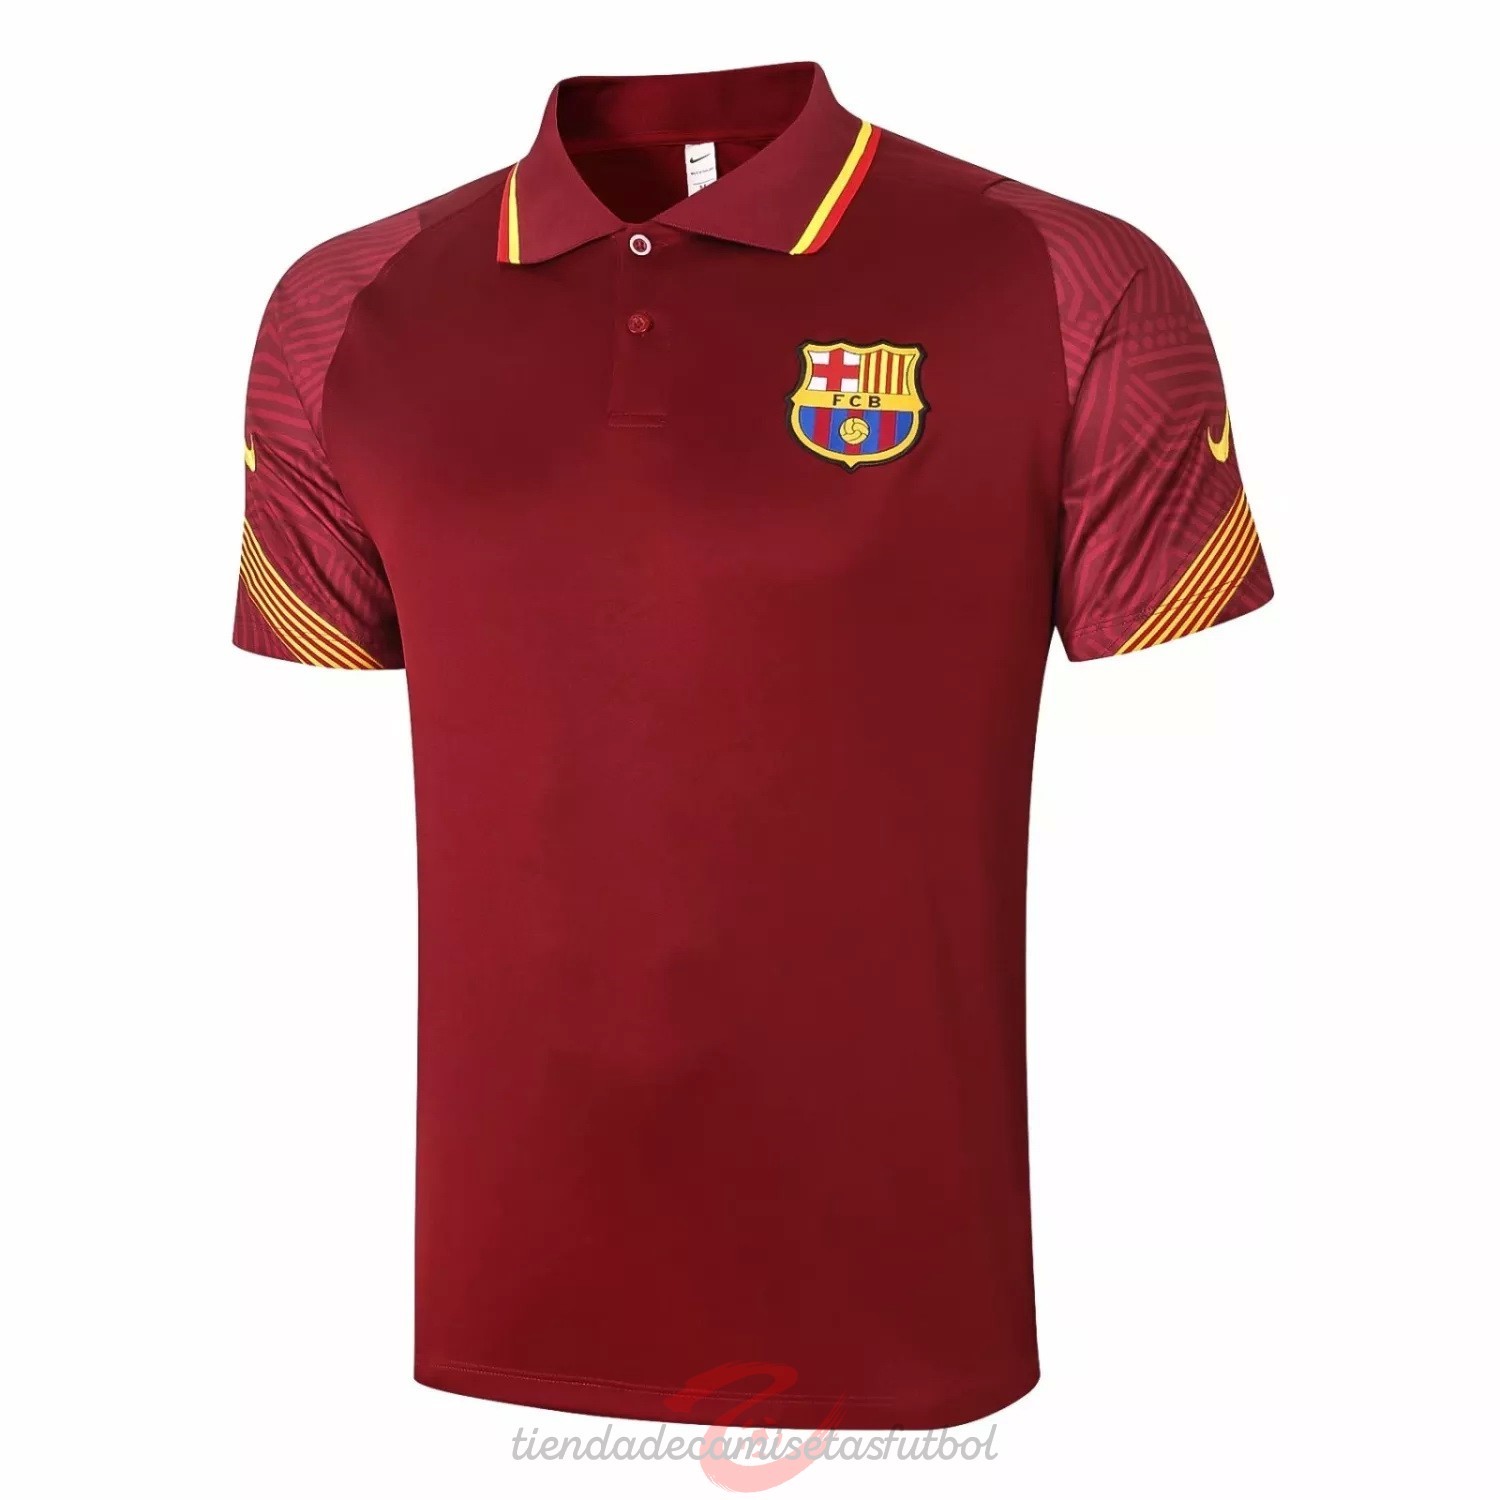 Polo Barcelona 2020 2021 Borgona Camisetas Originales Baratas